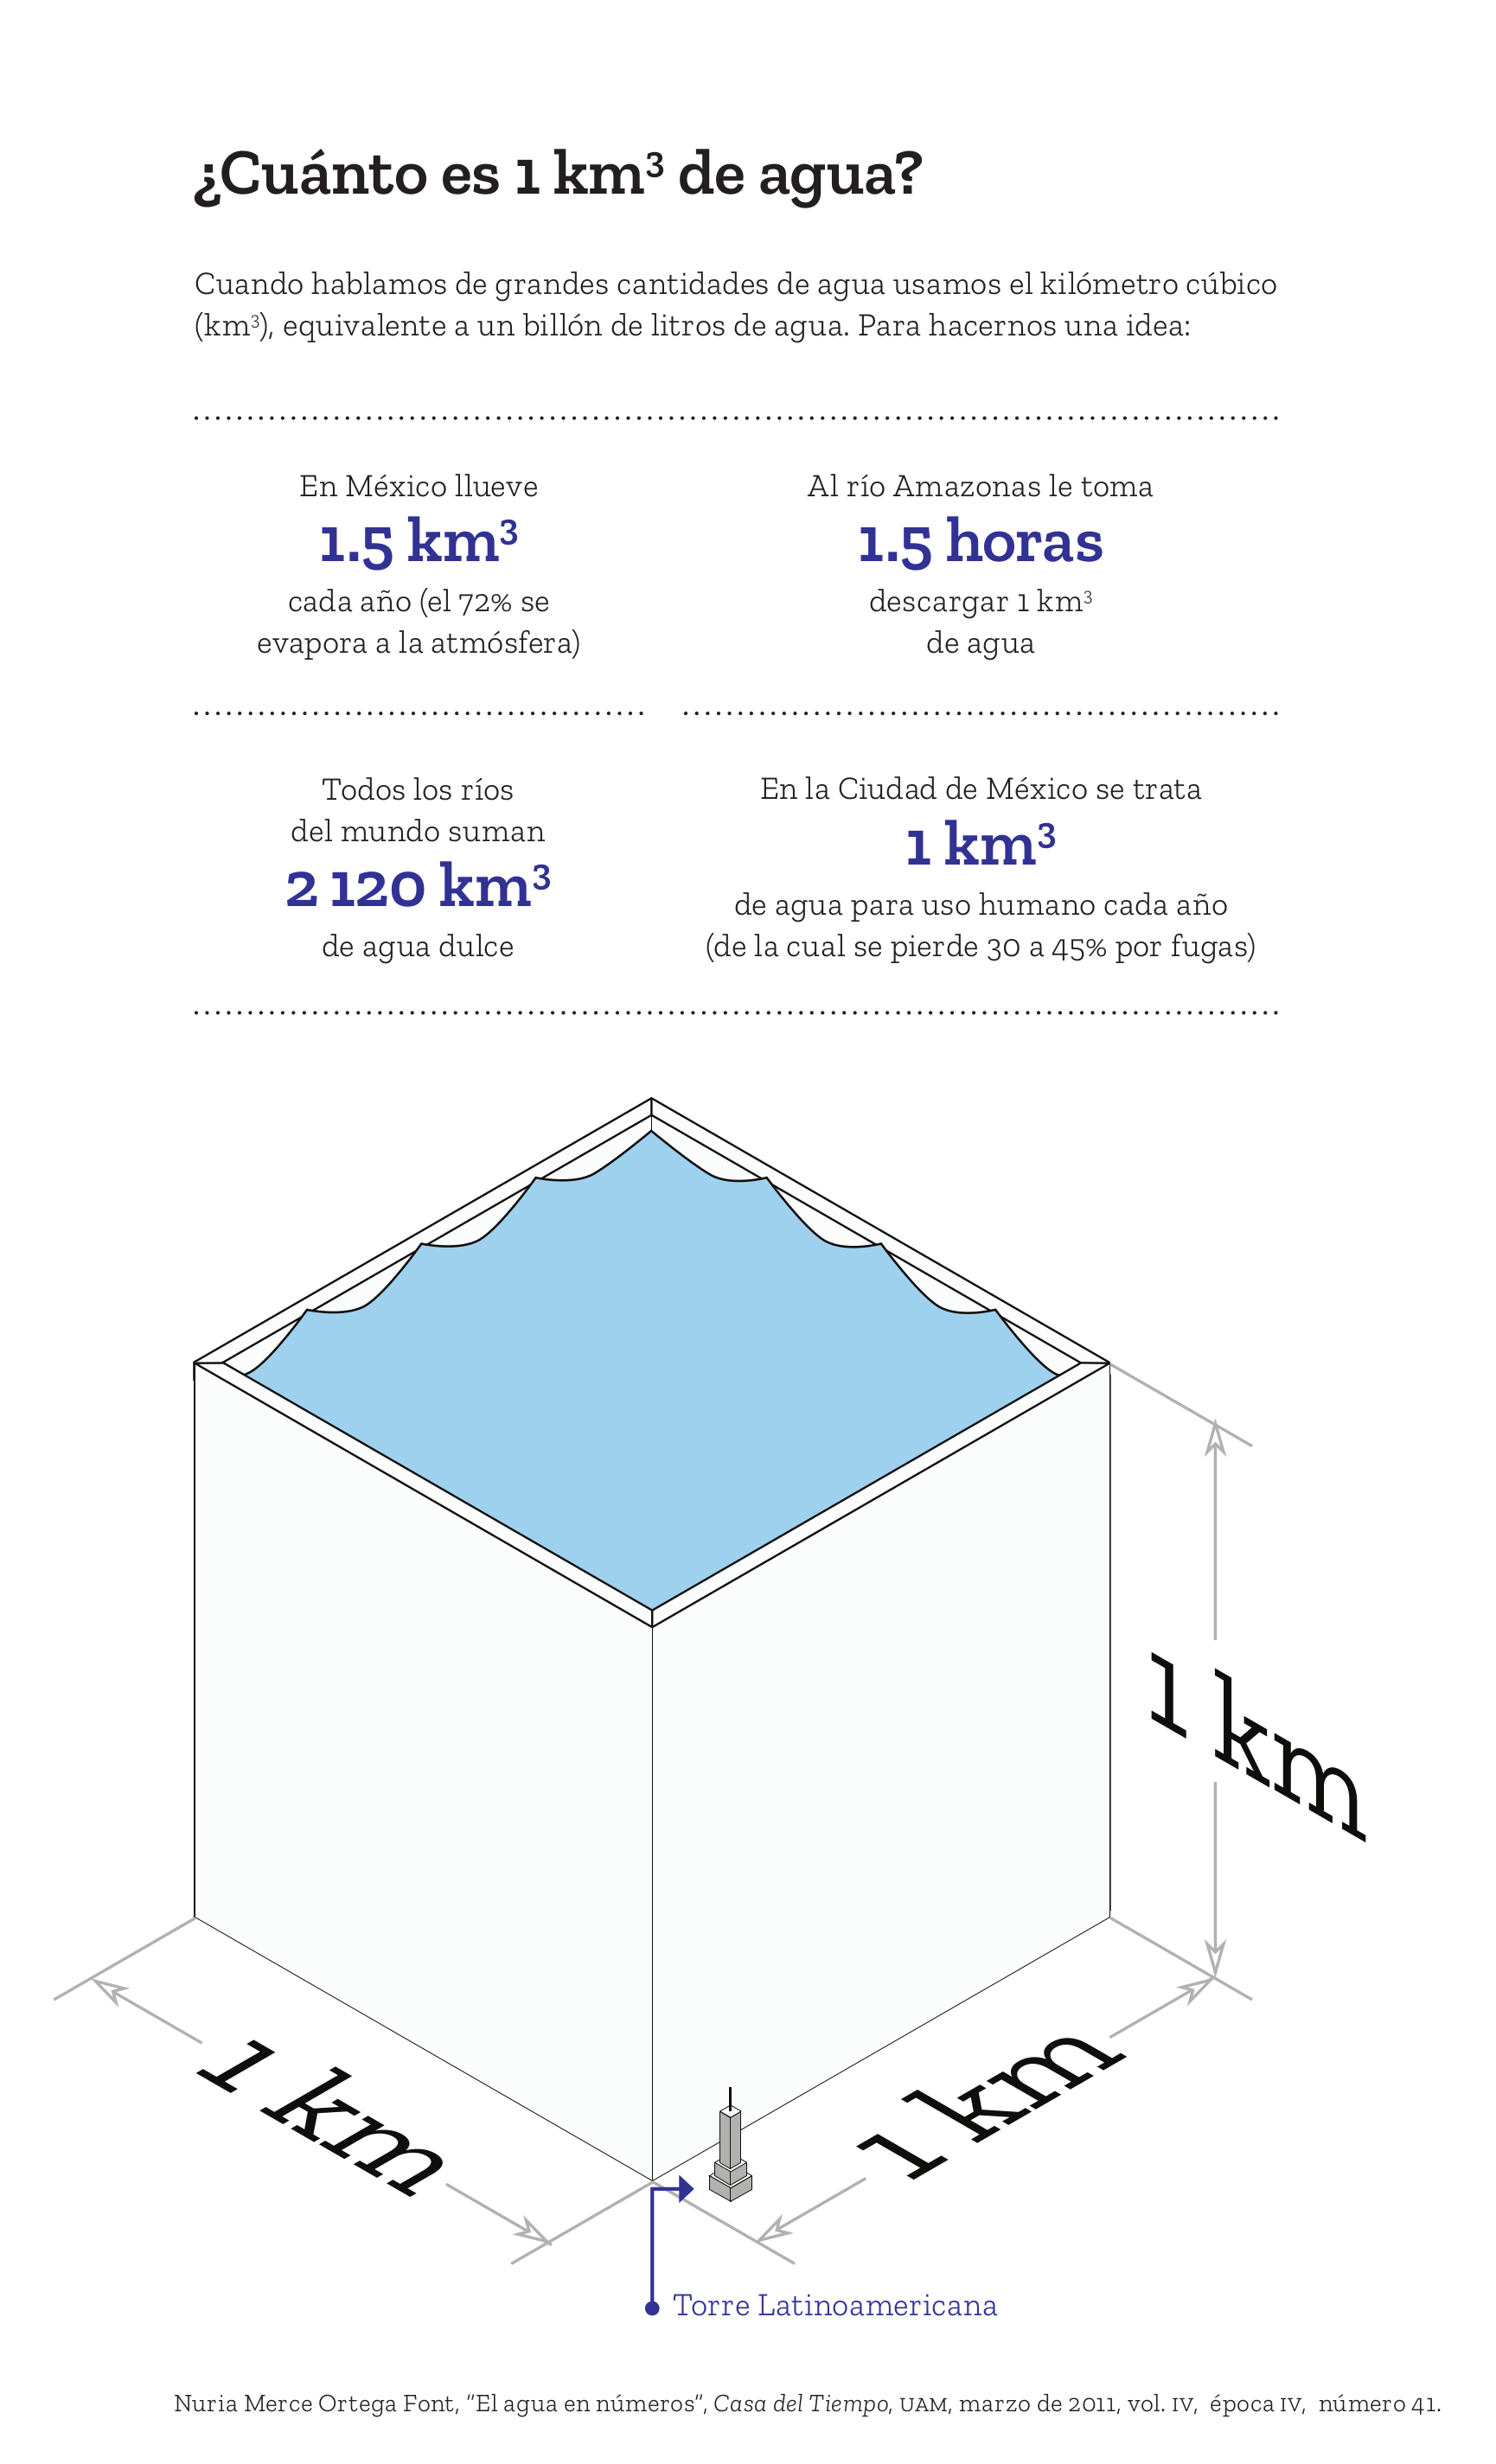 ¿Cuánto es 1 kilómetro cúbico de agua?